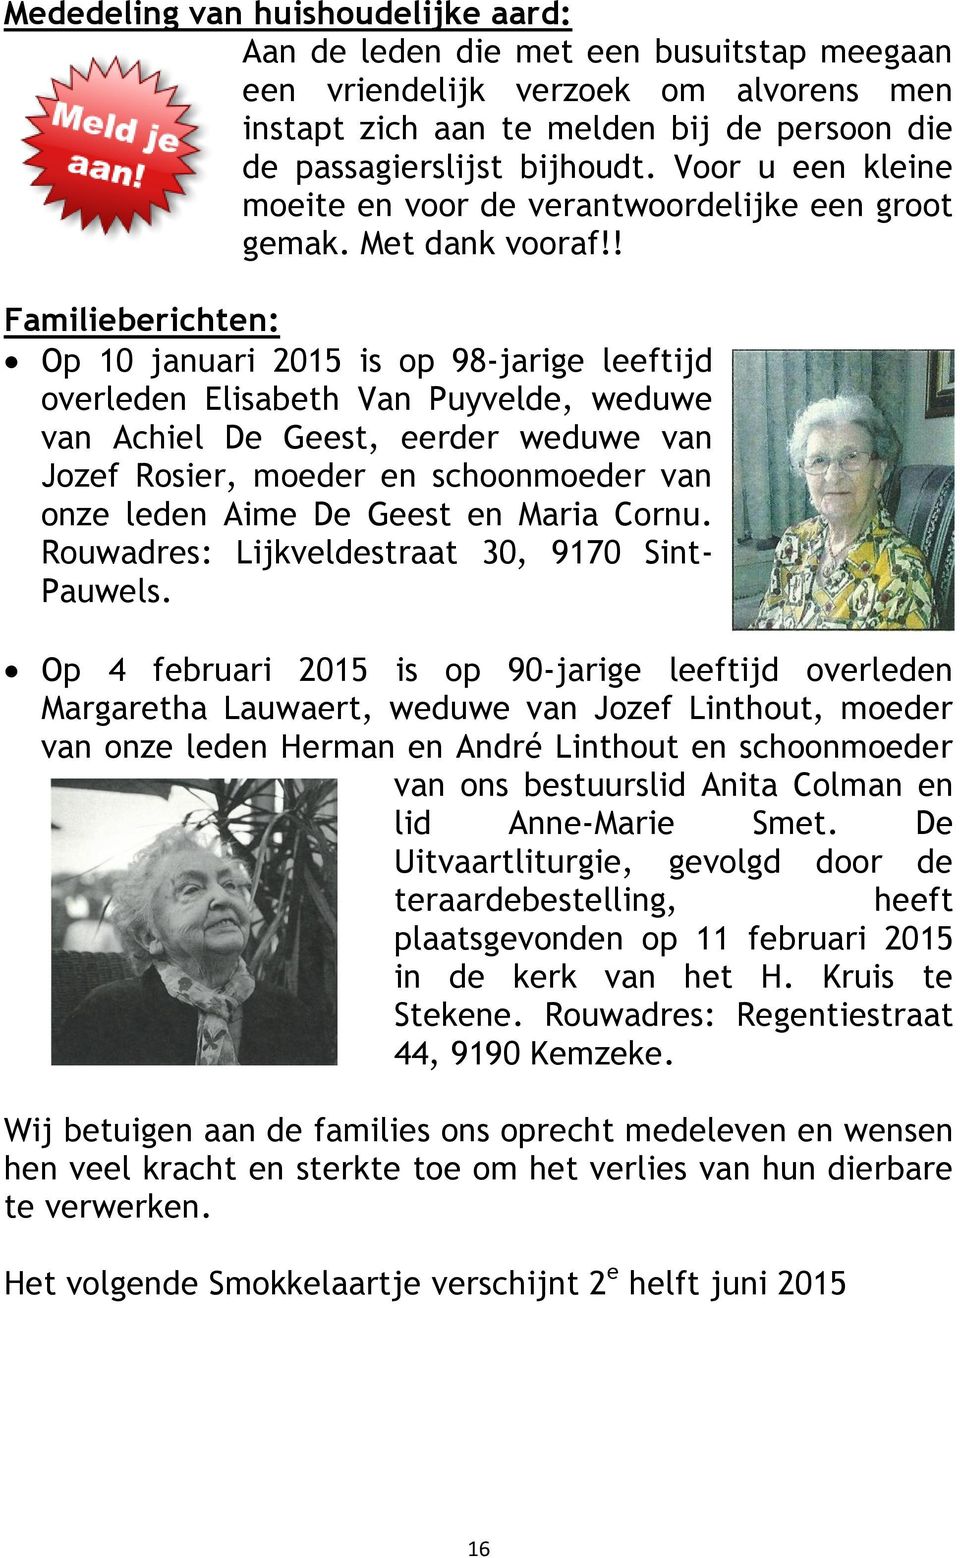 ! Familieberichten: Op 10 januari 2015 is op 98-jarige leeftijd overleden Elisabeth Van Puyvelde, weduwe van Achiel De Geest, eerder weduwe van Jozef Rosier, moeder en schoonmoeder van onze leden